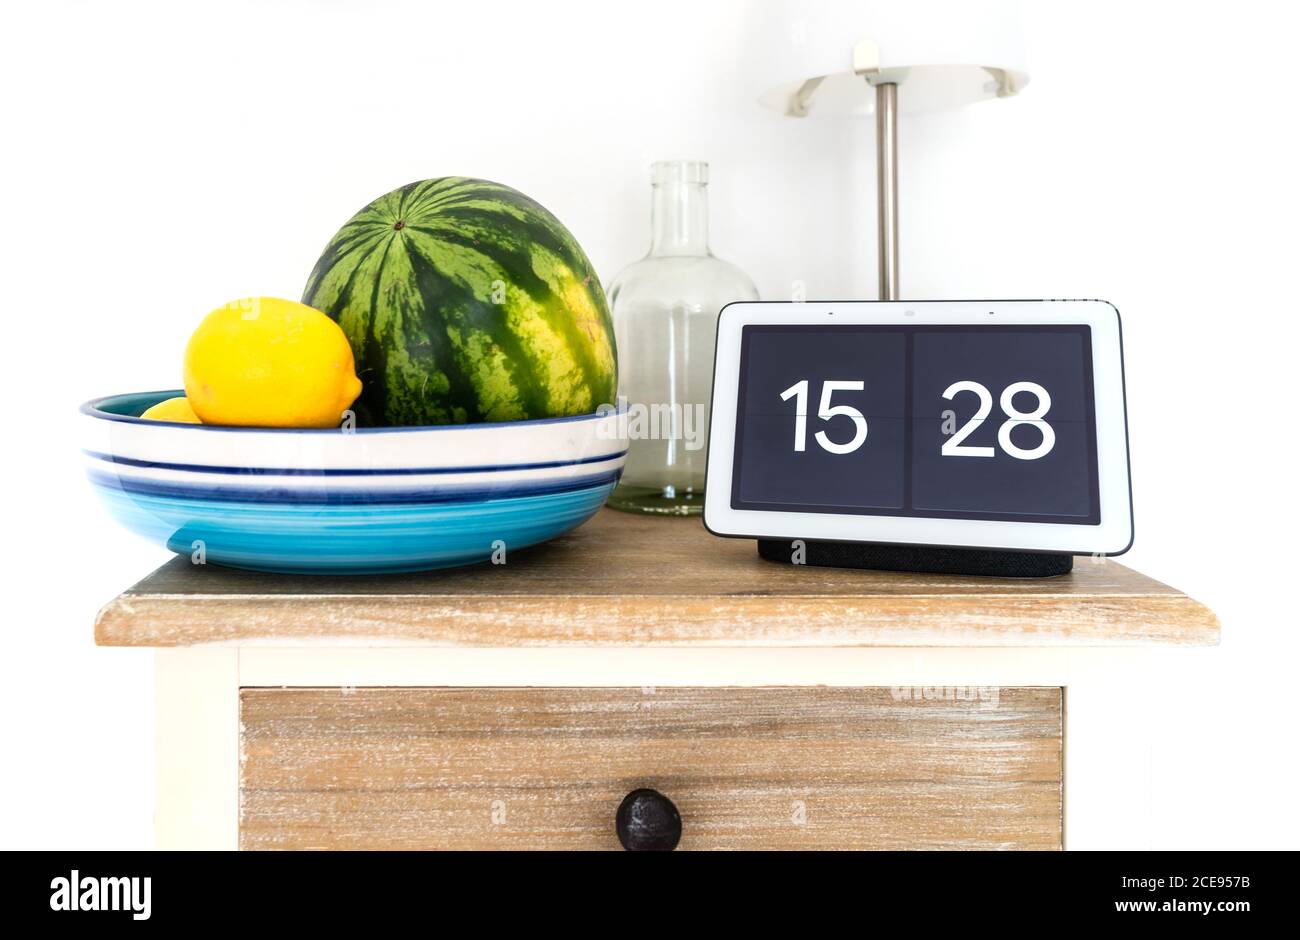 2020-08-31 Amburgo, Germania: Google Nest Hub Smart display e altoparlante intelligente su mensola cucina con melone e limoni d'acqua in ciotola di frutta Foto Stock